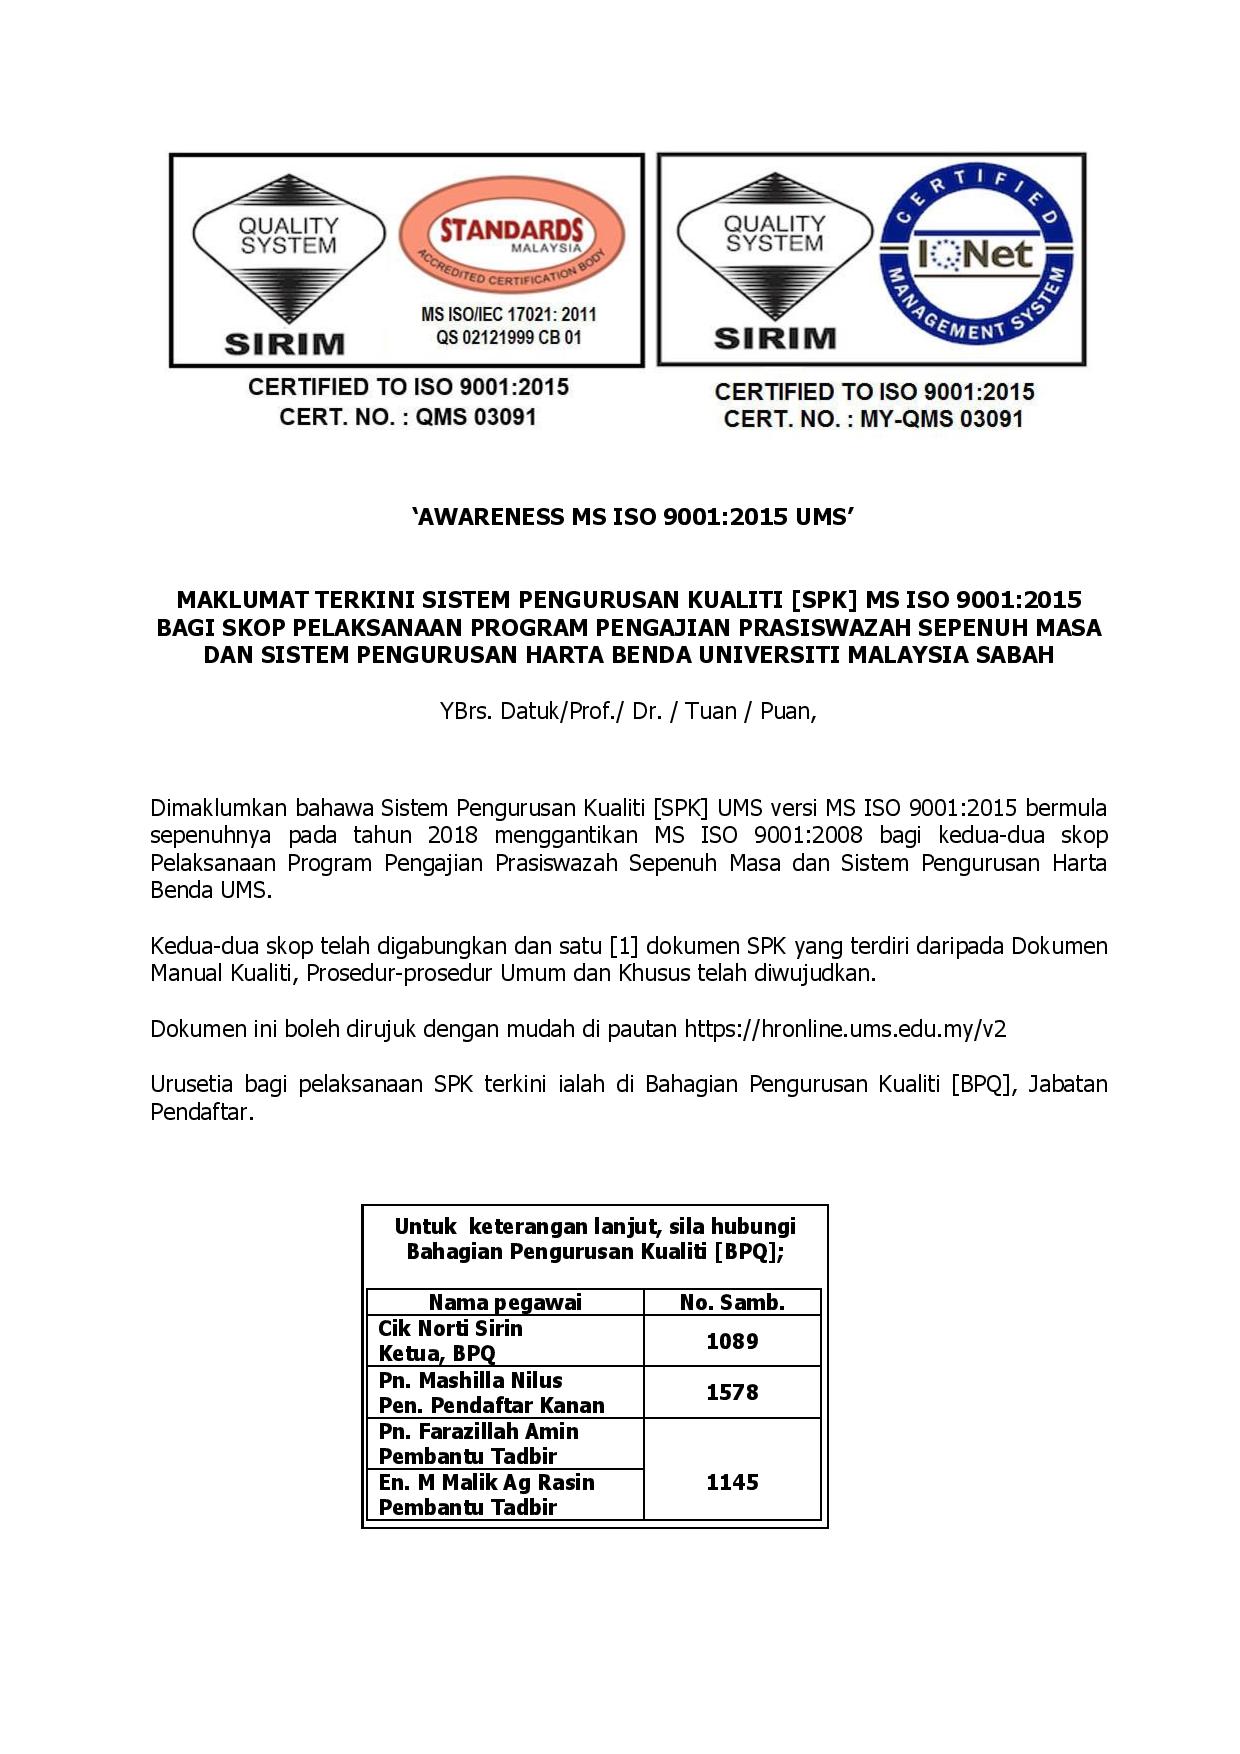 Kempen Kesedaran Ms Iso 9001 2015 Bagi Skop Pelaksanaan Program Pengajian Prasiswazah Sepenuh Masa Dan Sistem Pengurusan Harta Benda Universiti Malaysia Sabah